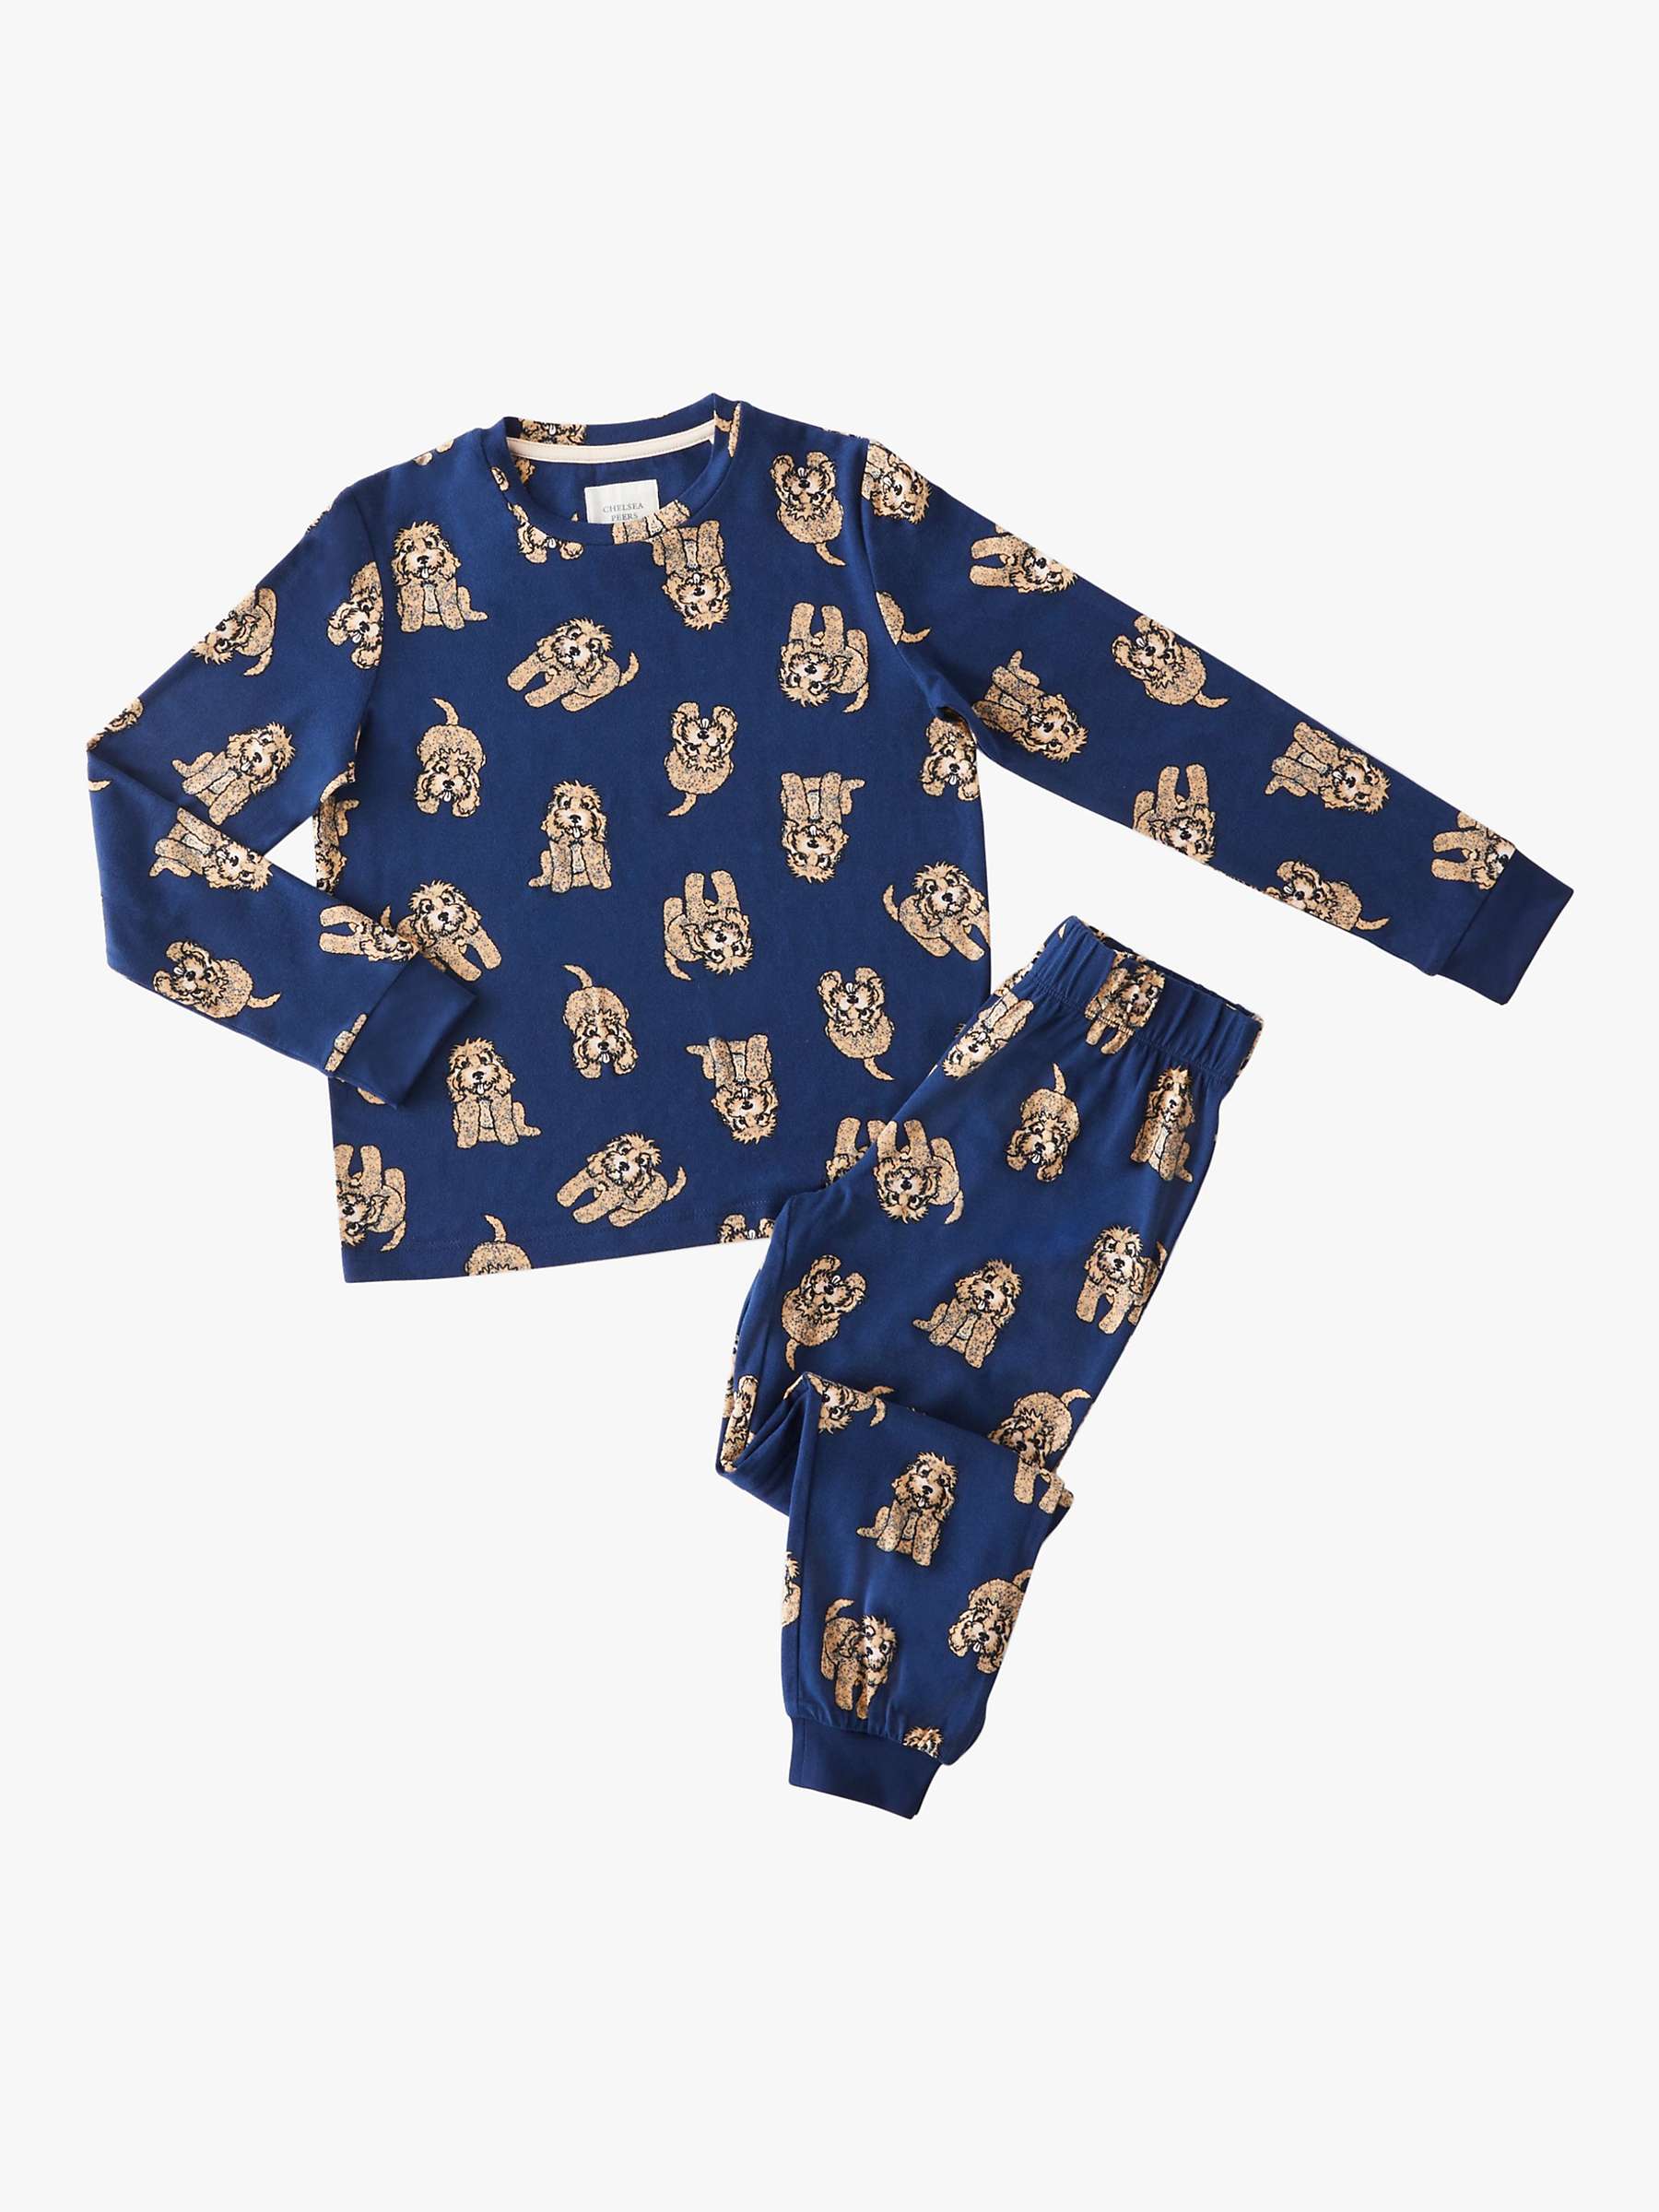 Buy Chelsea Peers Kids' Cockapoo Pyjama Set, Navy Online at johnlewis.com